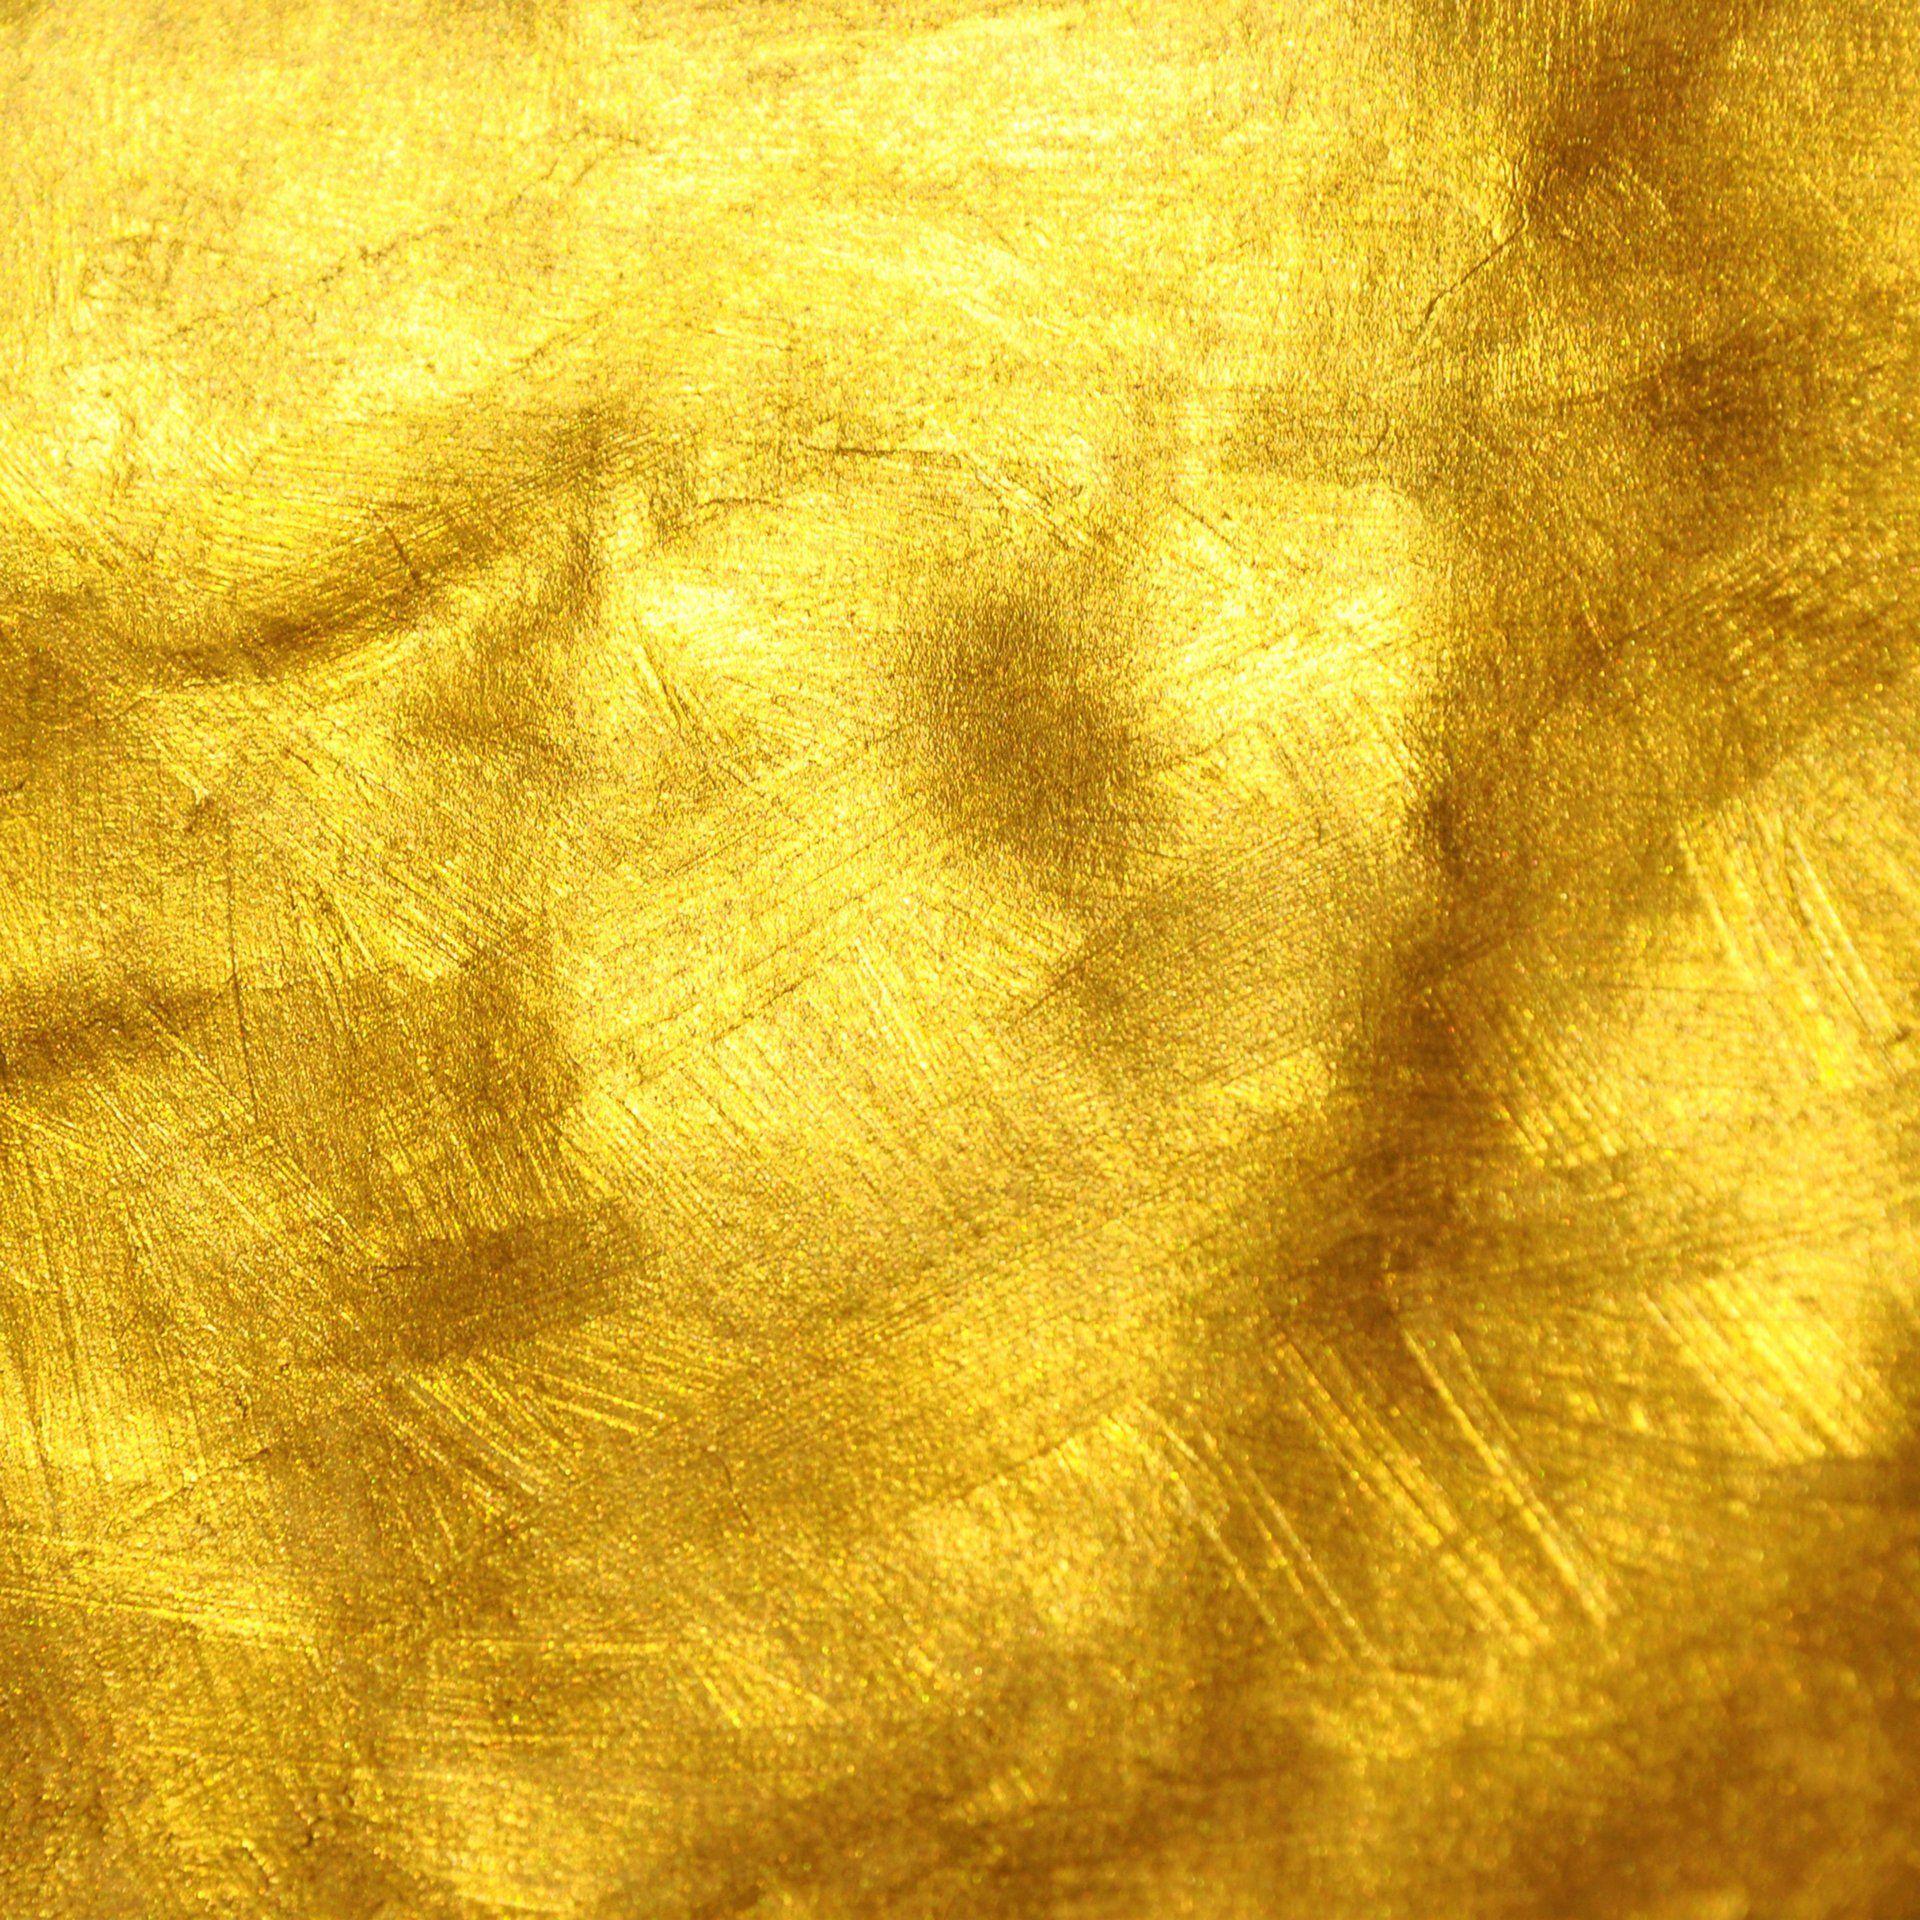 Hãy tải ngay bộ sưu tập hình nền vân đá vàng, bạn sẽ được trải nghiệm những hình nền đẹp lung linh, đầy ấn tượng với những đường vân đá vàng rất sáng tạo. Sự kết hợp giữa màu vàng rực rỡ và đường vân đá đẹp tuyệt vời cho chiếc điện thoại hay máy tính của bạn.